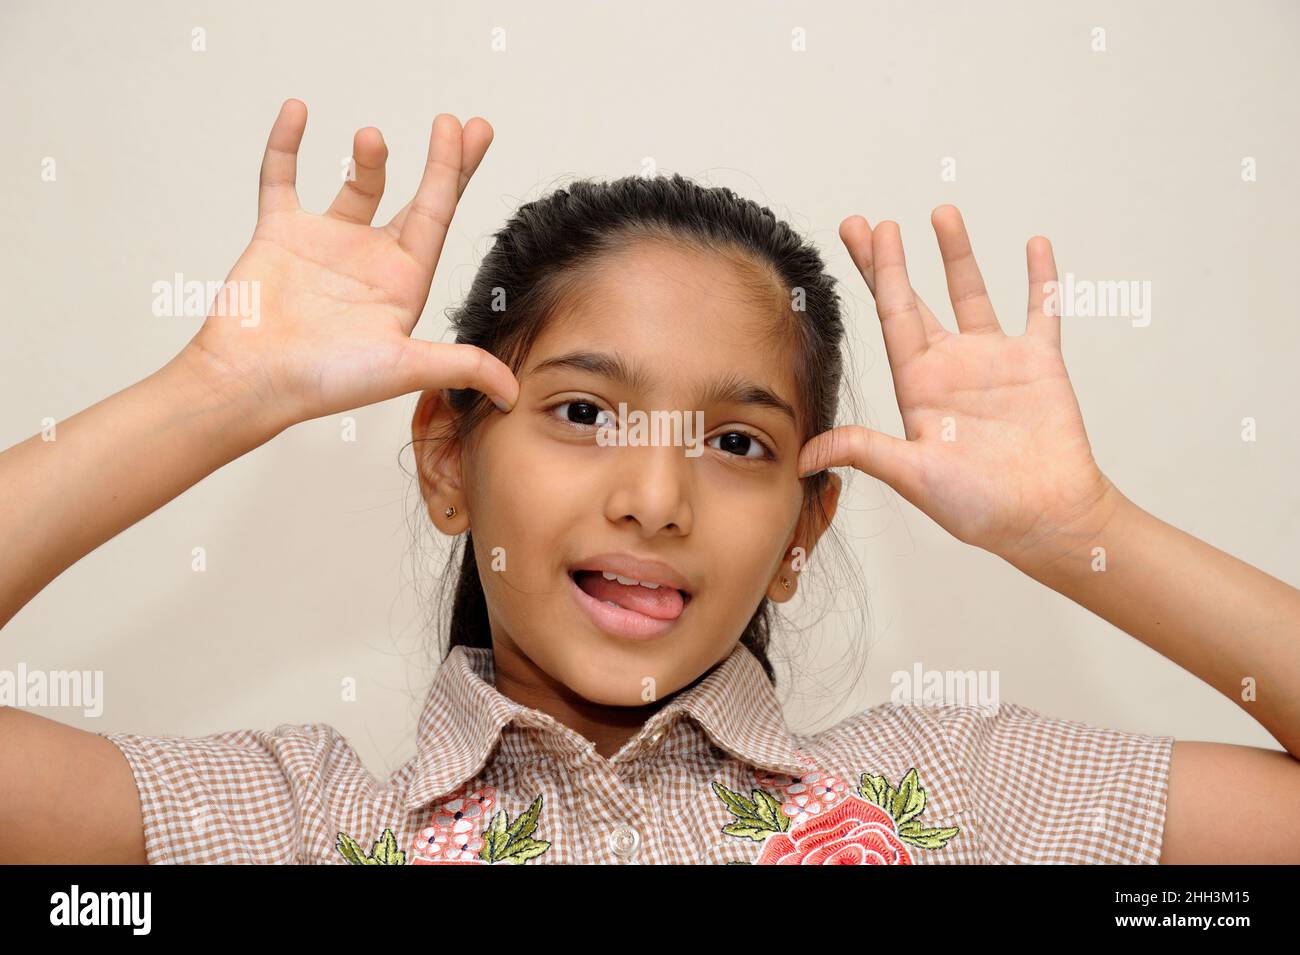 Mumbai Maharashtra India Asia Aug. 13 2021 Beautiful little indian eight years old girl showing funny expression Stock Photo